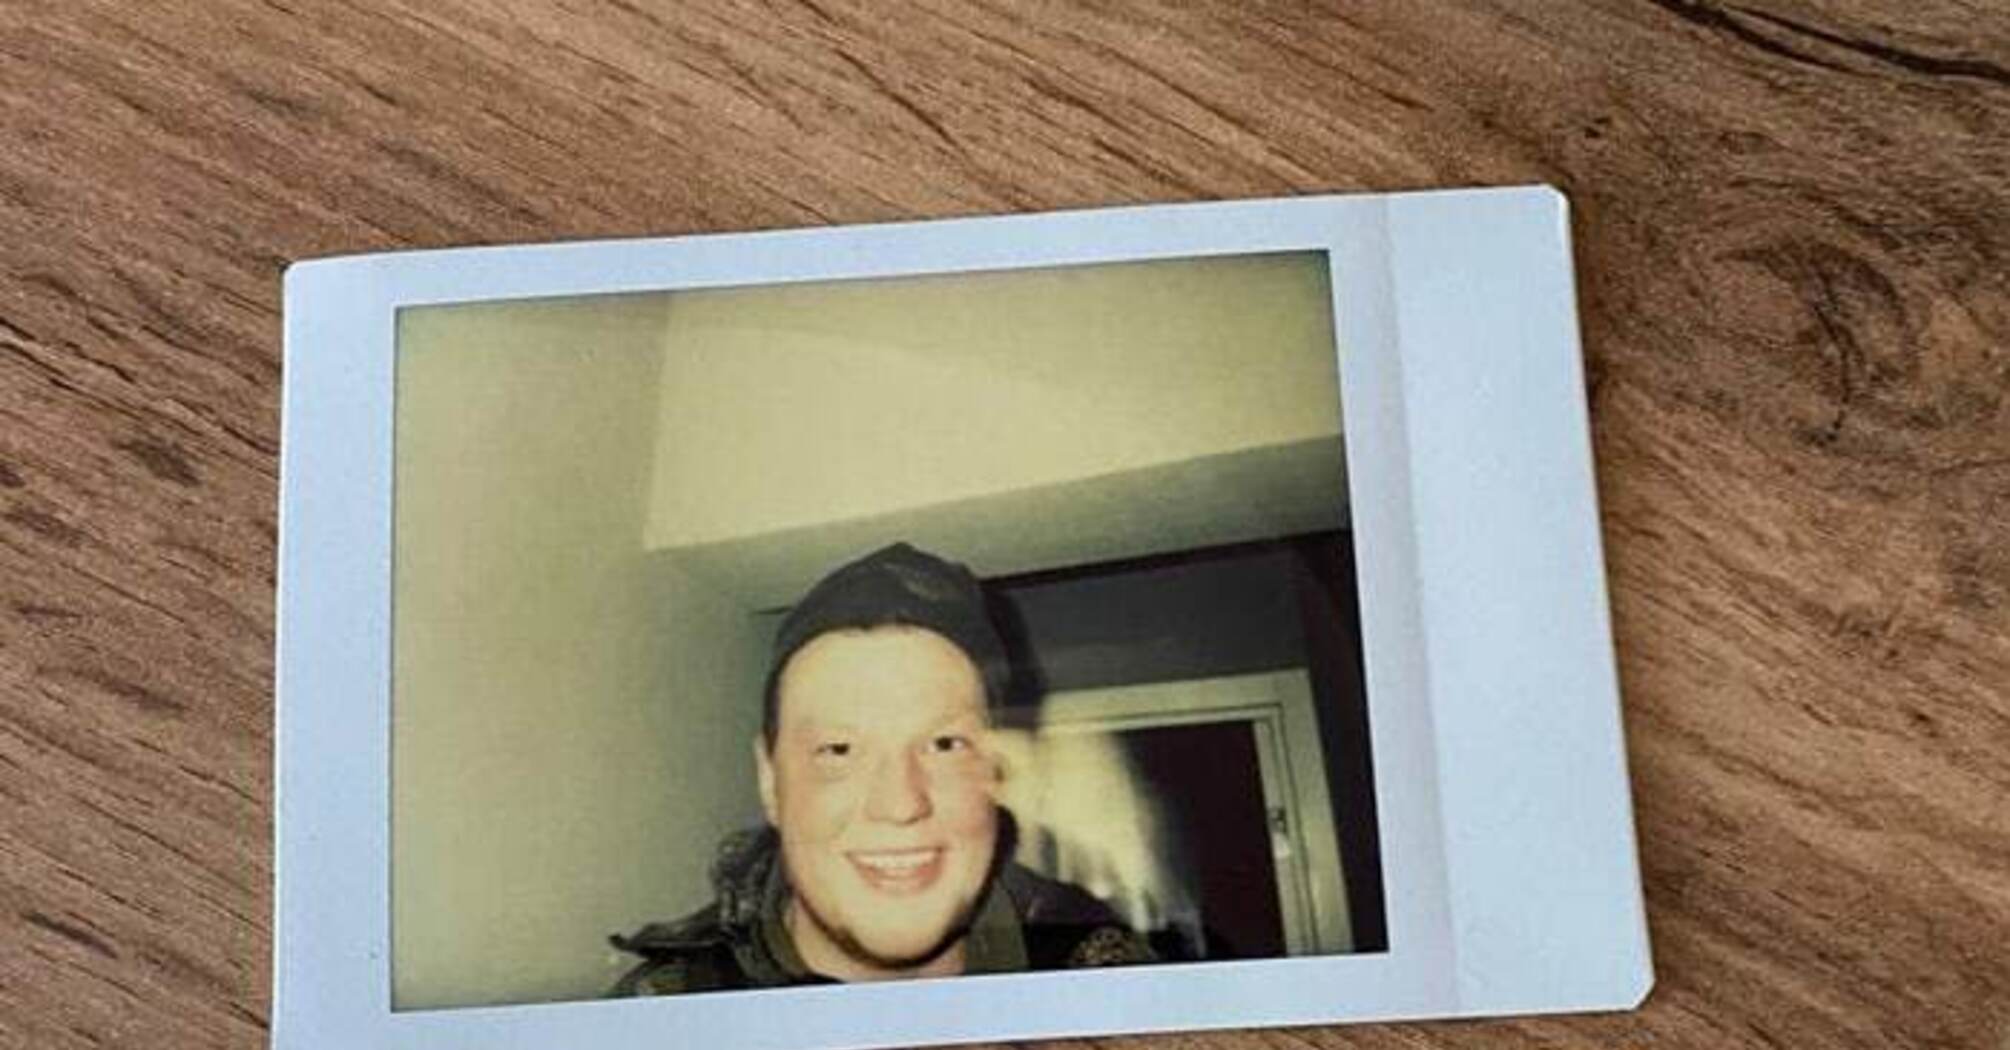 Недалекоглядный оккупант 'спалился' из-за фото на Polaroid в одной из квартир Ирпеня 